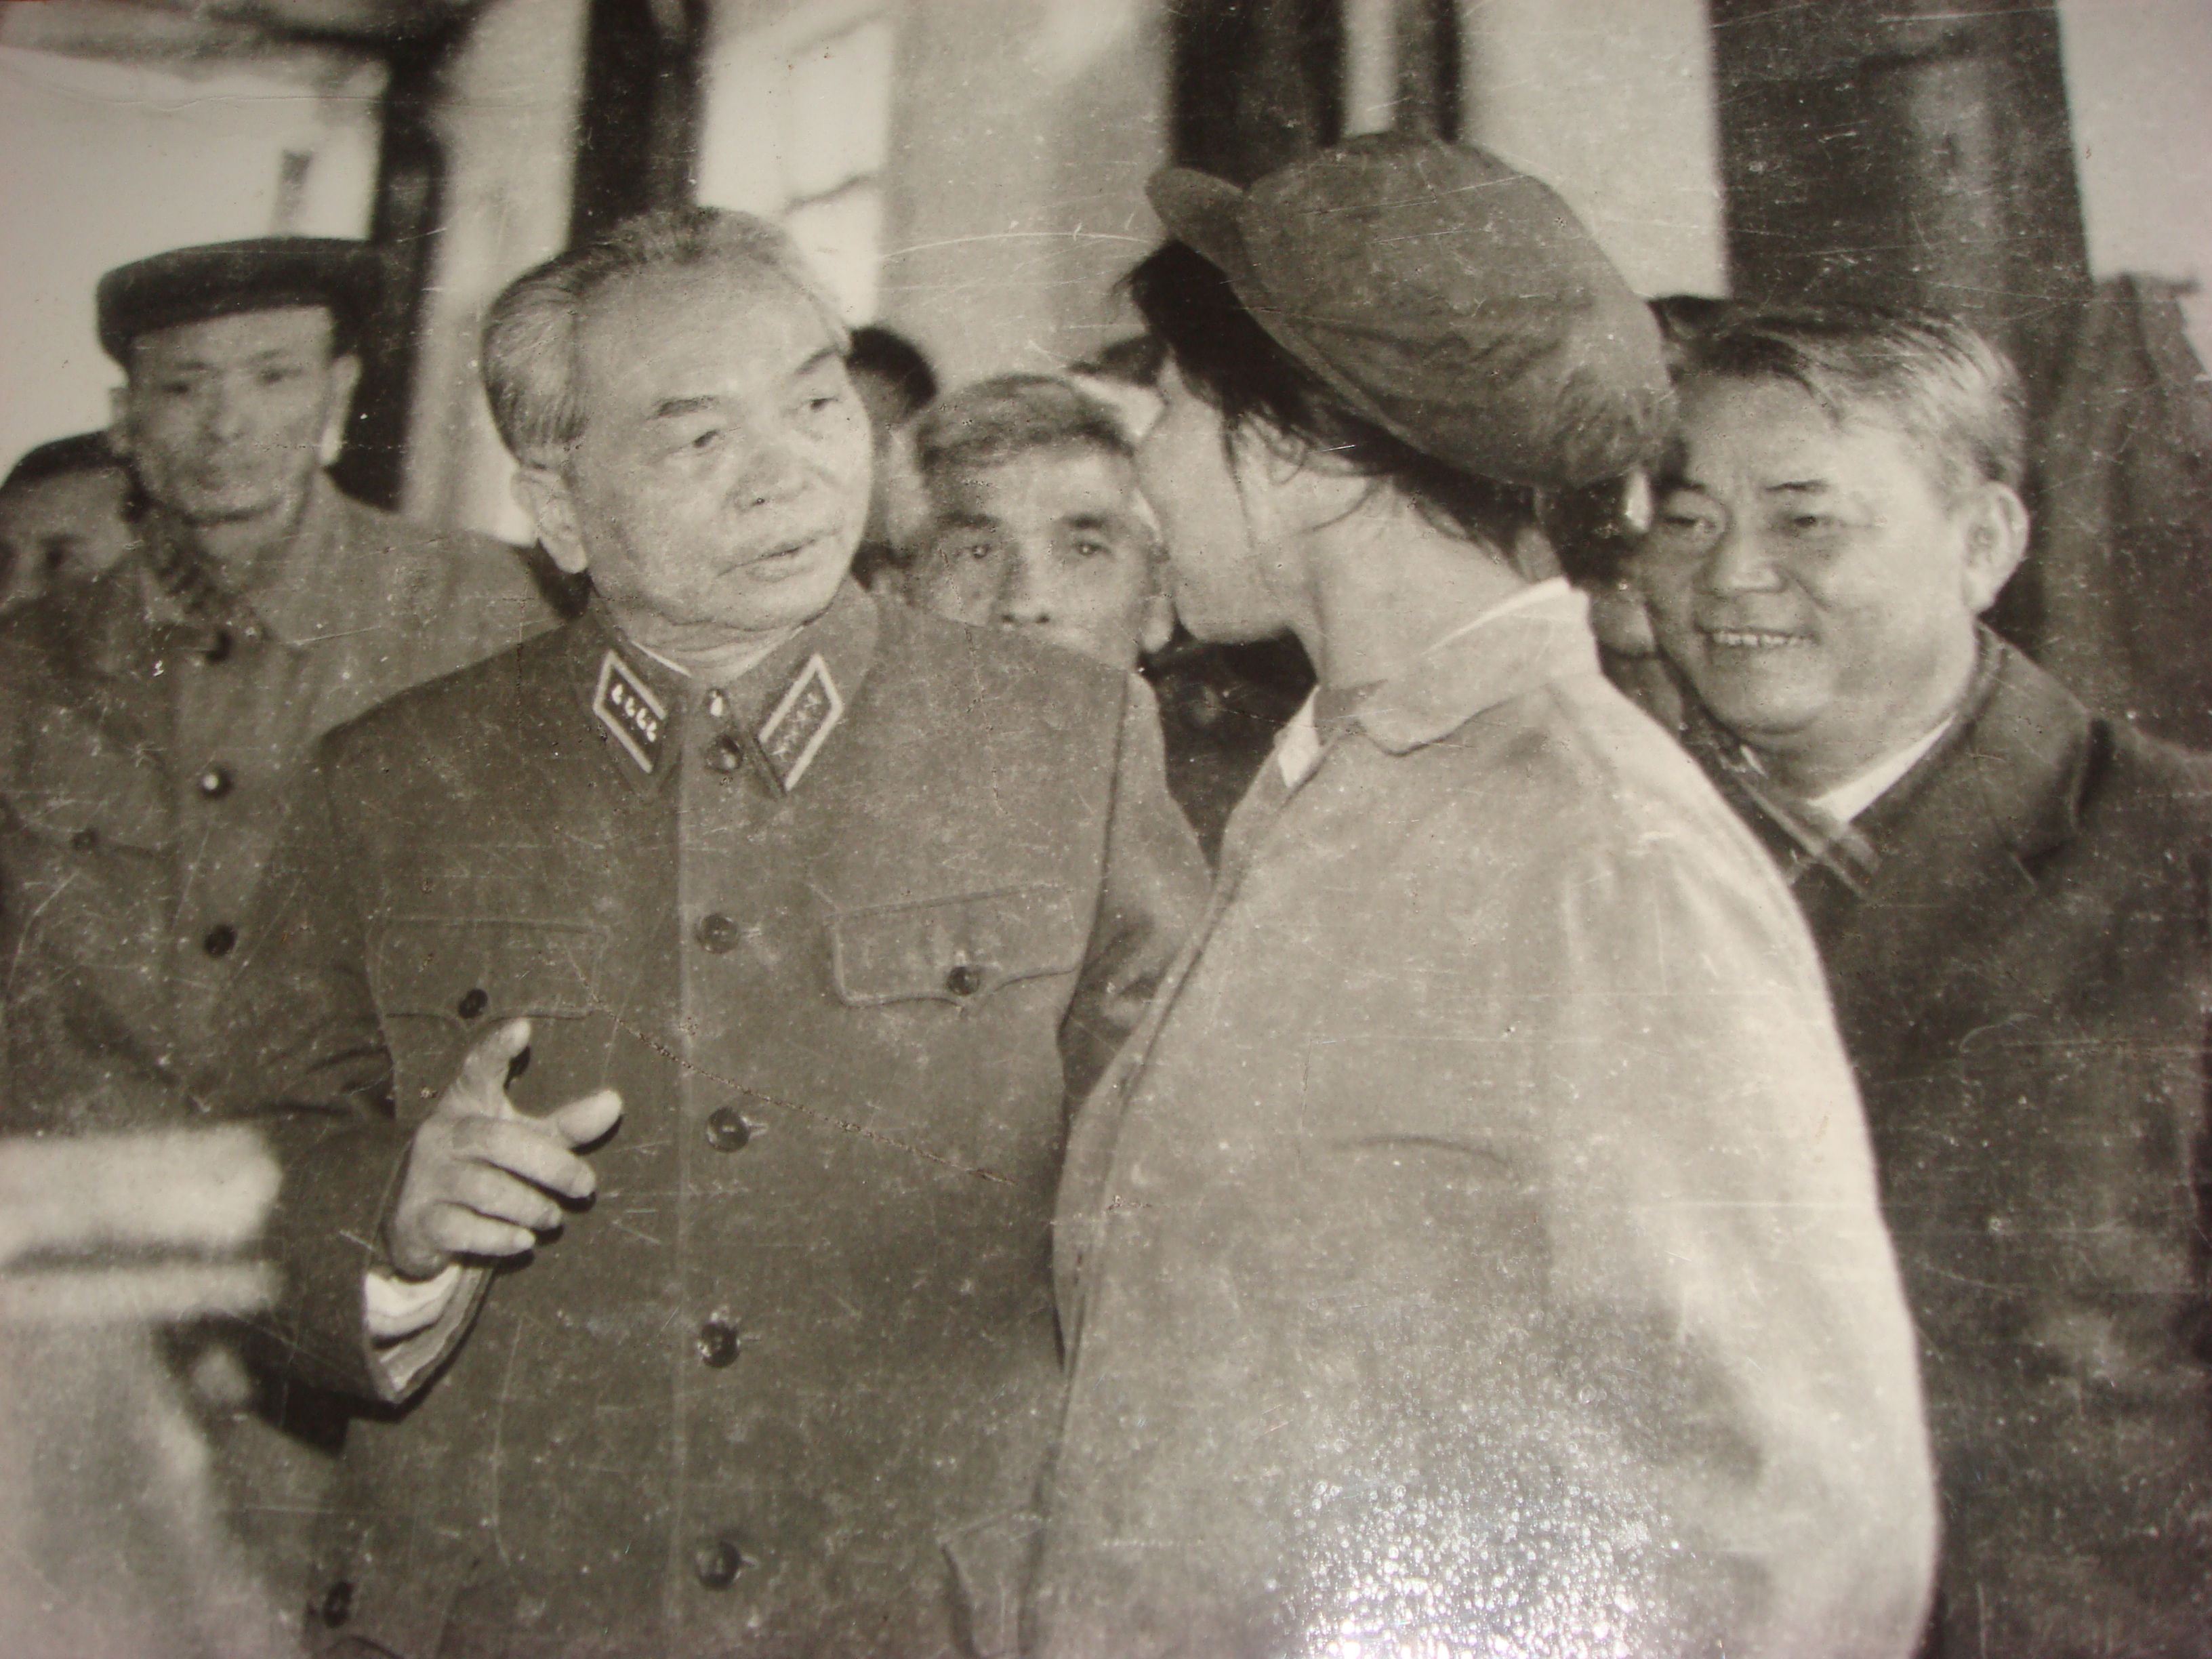 Đại tướng Võ Nguyên Giáp (thứ 3 phải qua) cùng với đ/c Nguyễn Hữu Đợi (thứ nhất phải qua) thăm huyện Quỳnh Lưu - năm 1977.